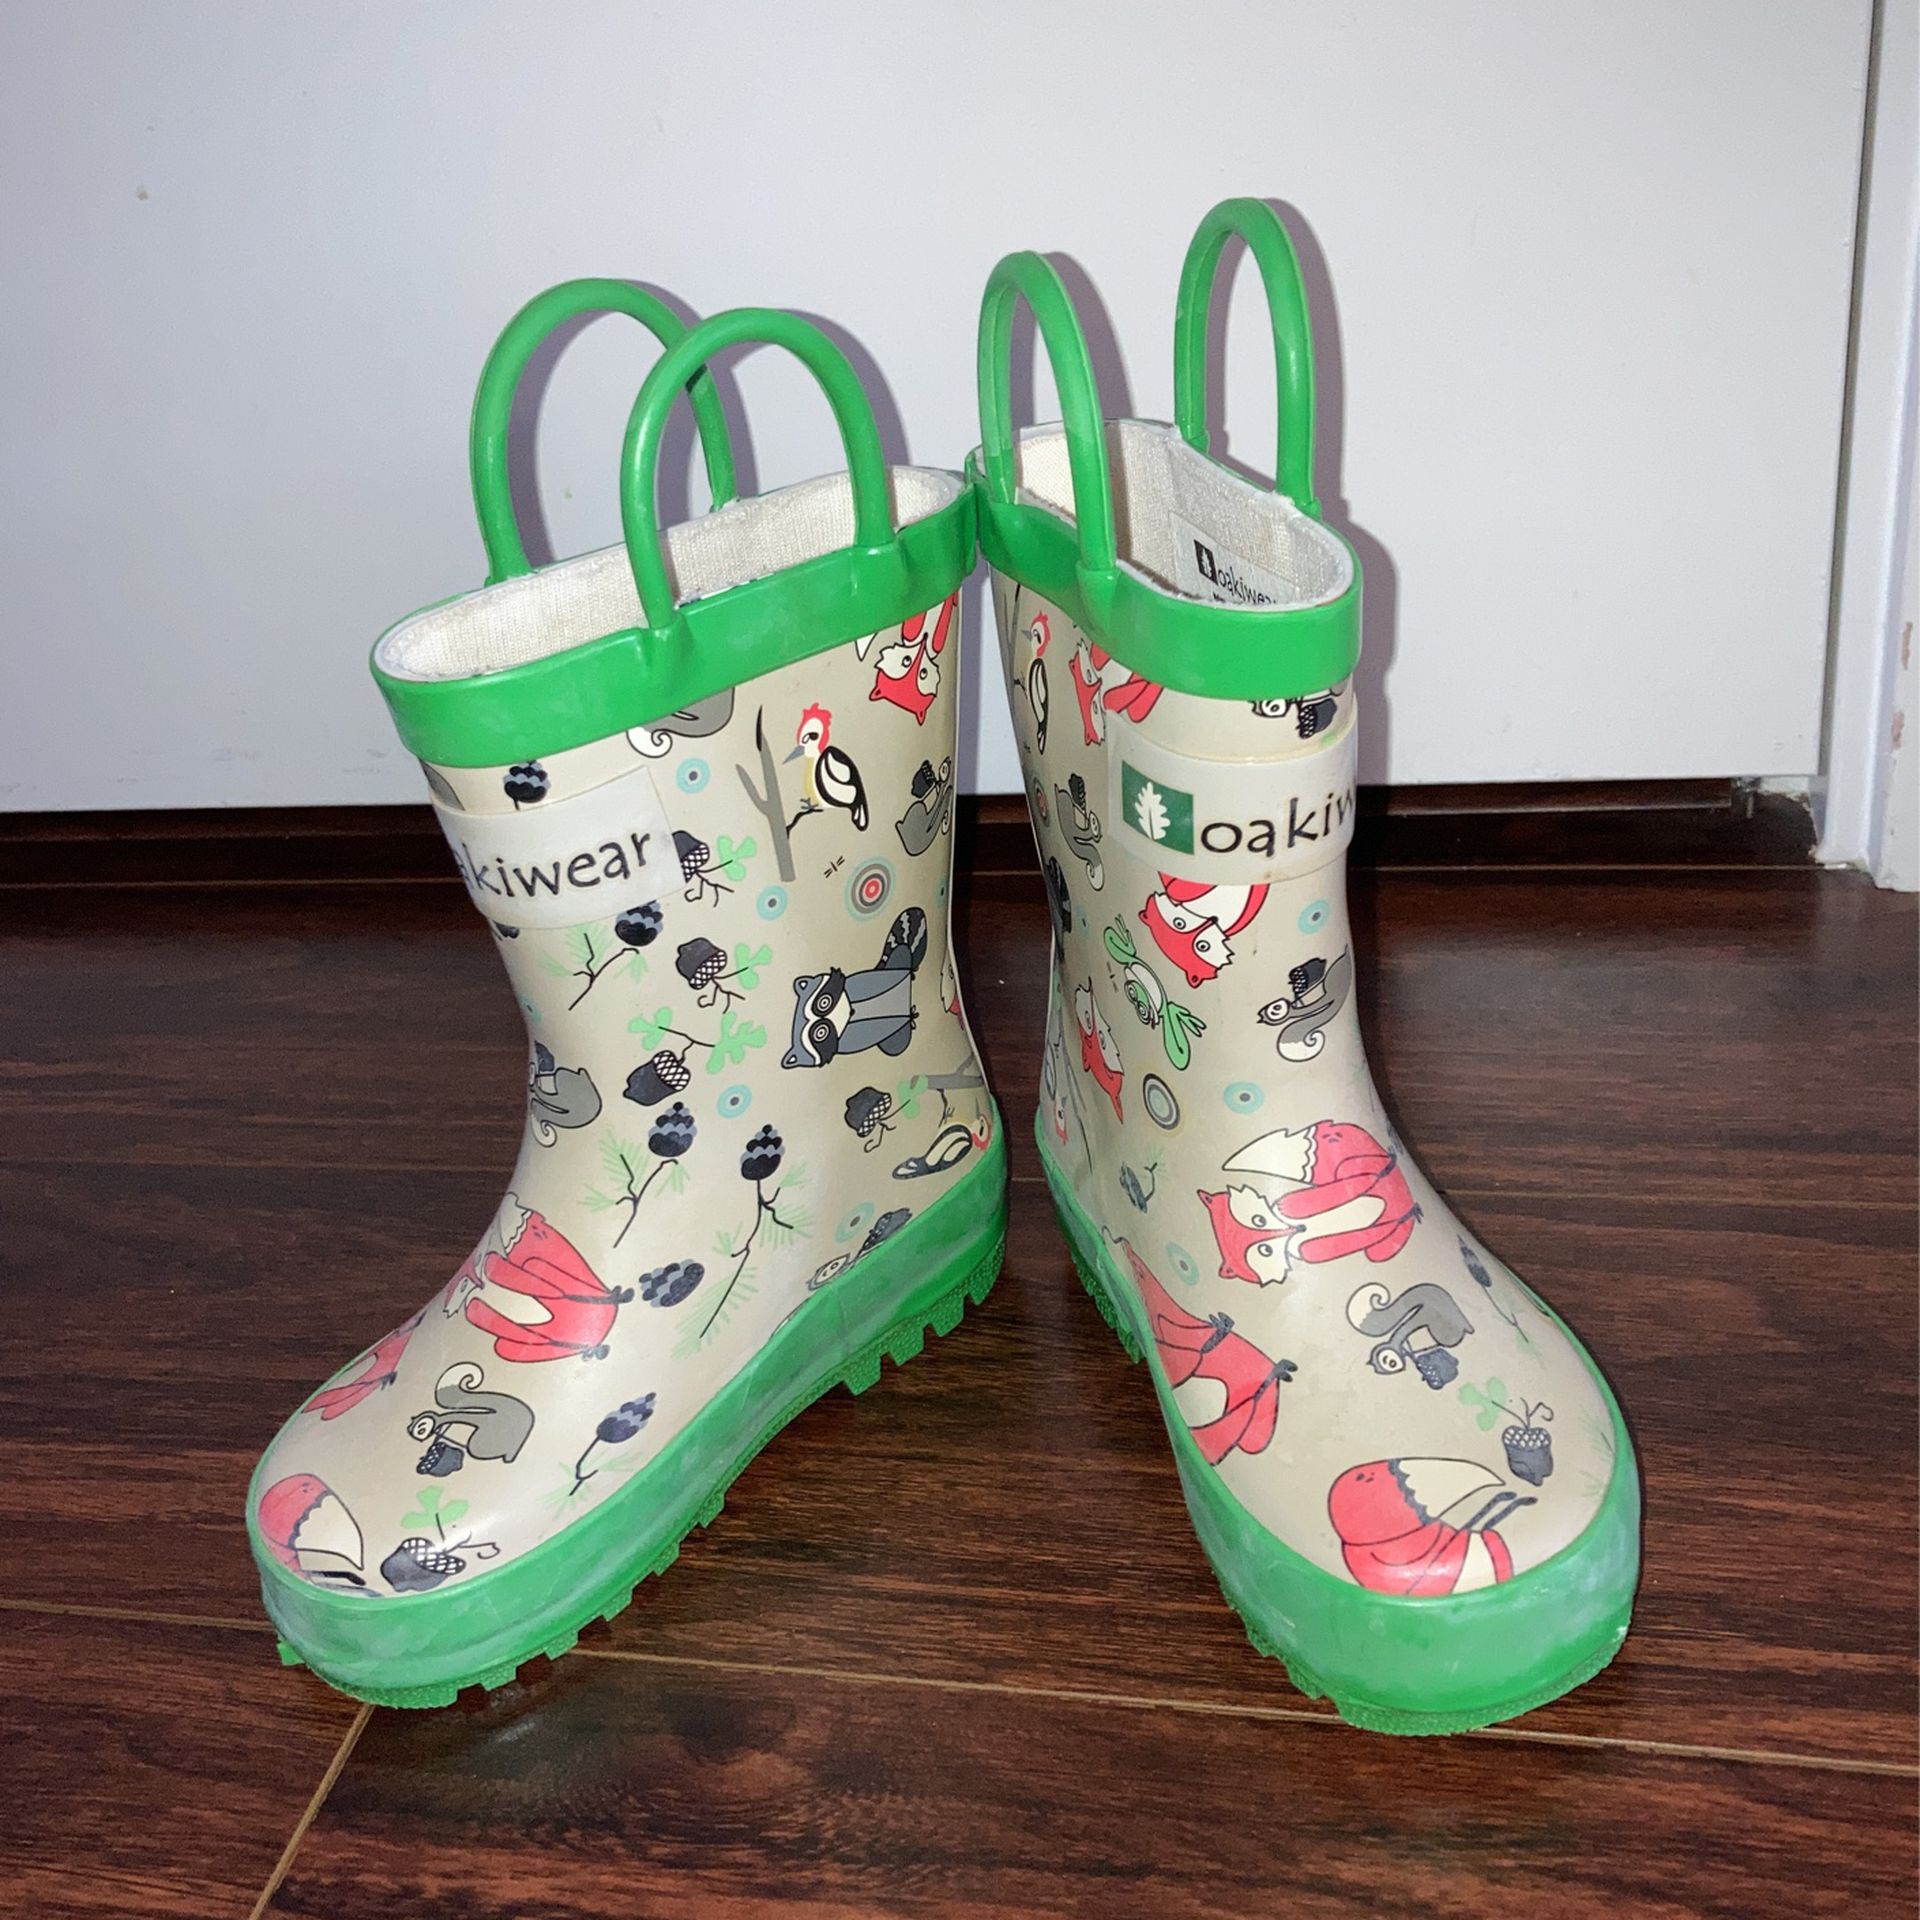 Oakiwear Toddler Rain Boots Size 5